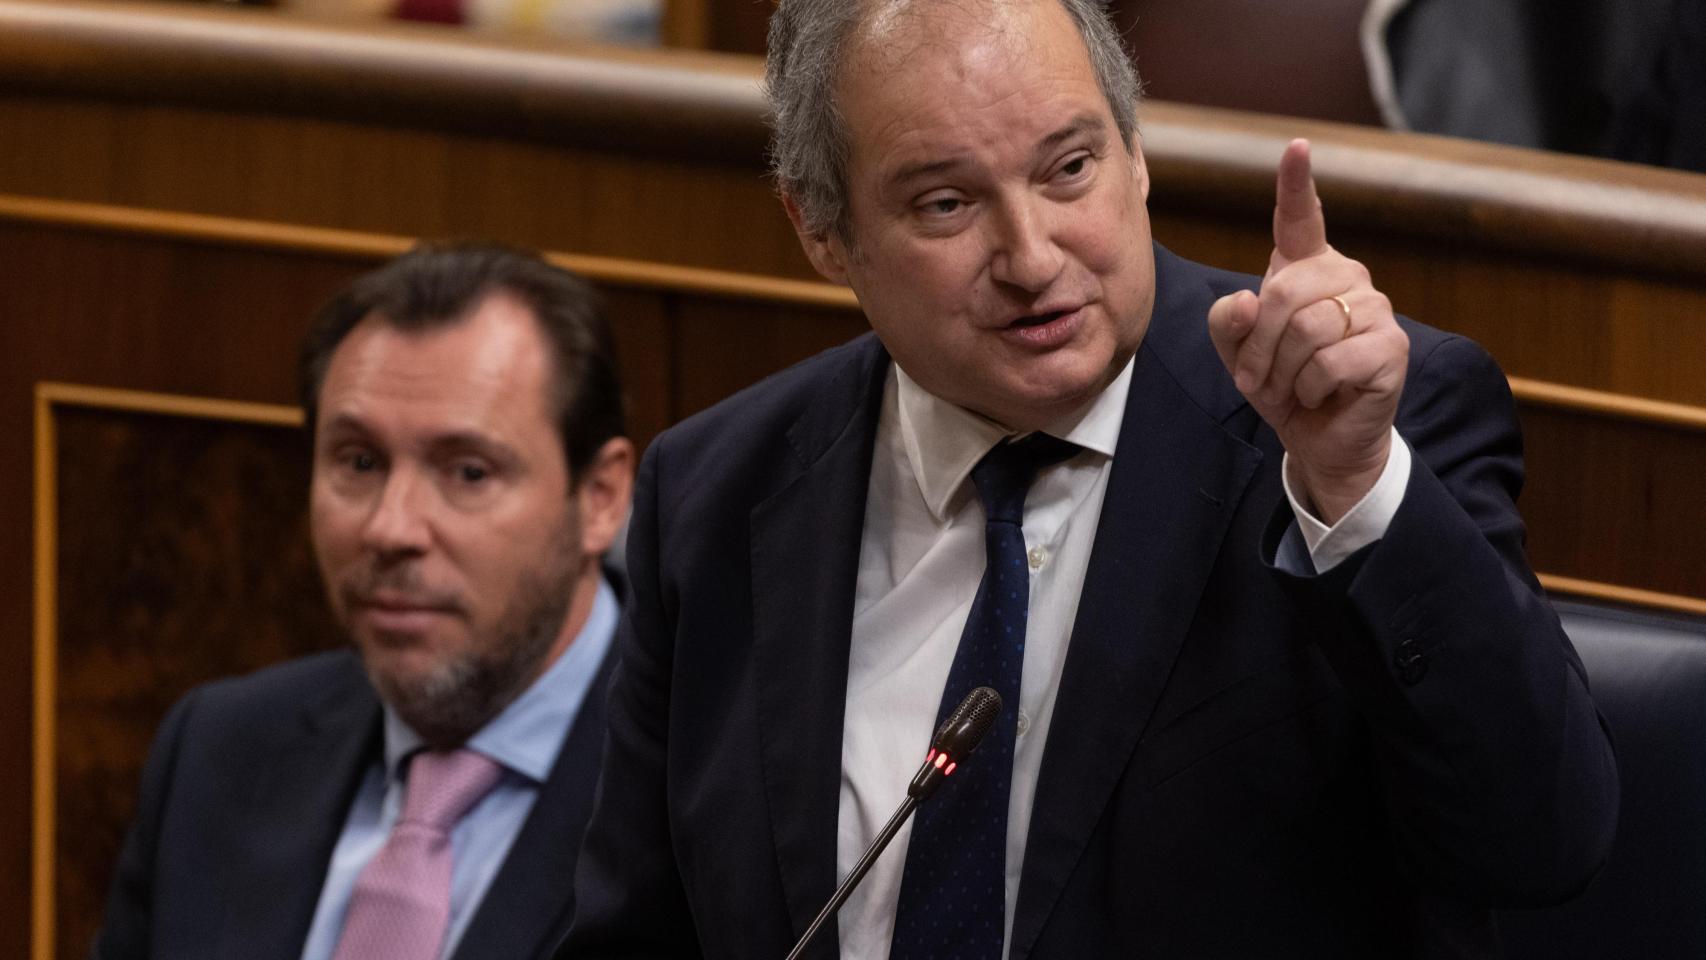 El ministro de Industria, Jordi Hereu, interviene durante una sesión de control al Gobierno, en el Congreso de los Diputados.